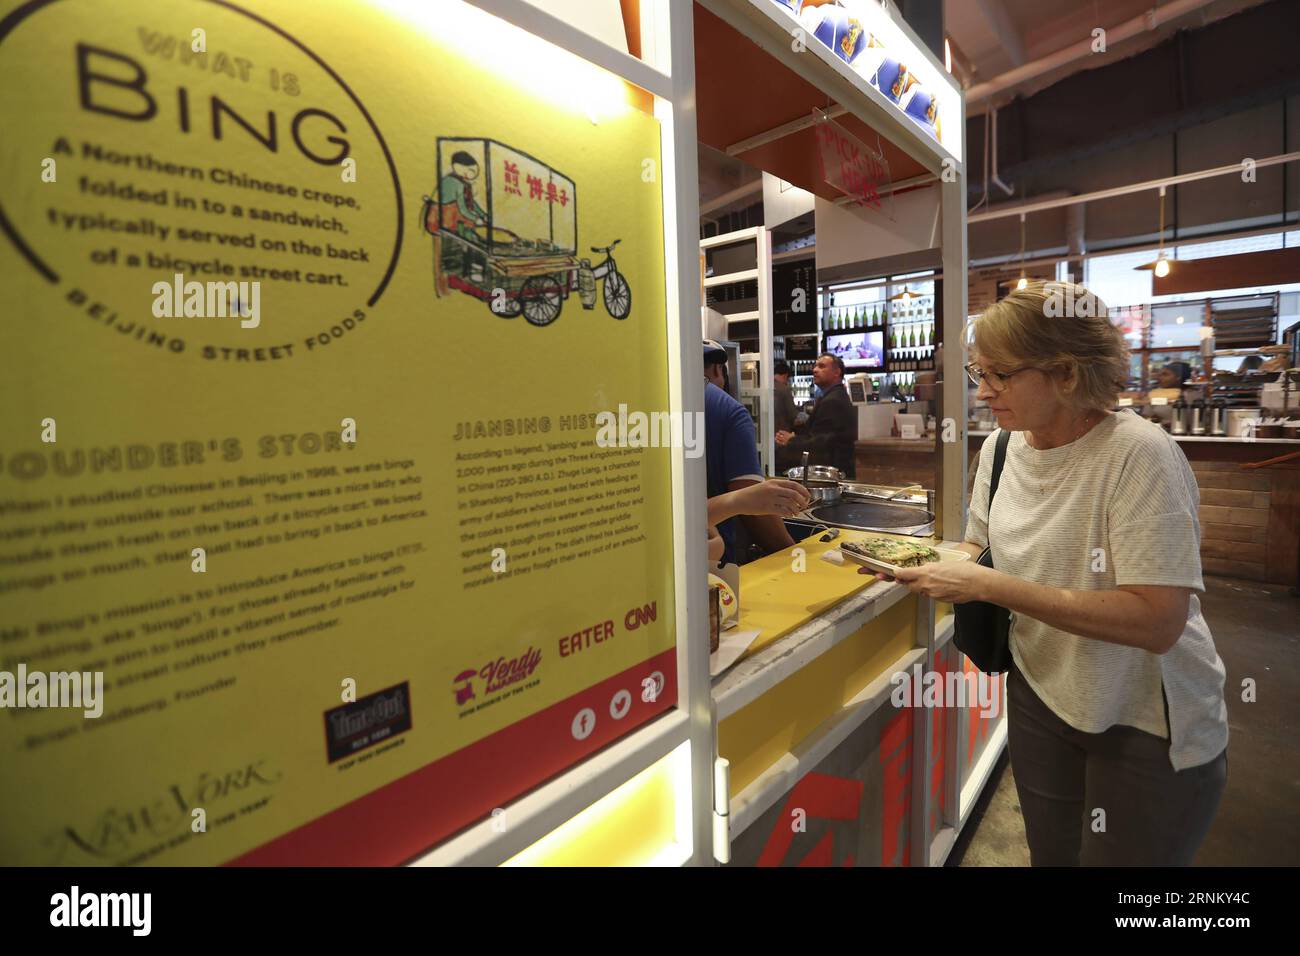 (170425) -- NEW YORK, 25. April 2017 -- Eine Kundin holt ihren Jianbing am Kiosk von Mr. Bing im UrbanSpace Food Court in New York, USA, 17. April 2017 ab. UrbanSpace in der Innenstadt von New York ist ein Ort, an dem weiße Kragen während ihrer Arbeitstage zum Mittagessen kommen. In den letzten Monaten haben sich Kunden immer vor einem Kiosk unter einem Banner mit chinesischen Schriftzeichen aufgestellt. Was dieser Kiosk verkauft, ist ein sehr authentisches chinesisches Essen in Nordchina - Jianbing oder der chinesische Krepe. Der Kiosk trägt den Namen Mr. Bing und gehört Brian Goldberg, der in New York geboren und aufgewachsen ist. Goldberg ist sehr Stockfoto